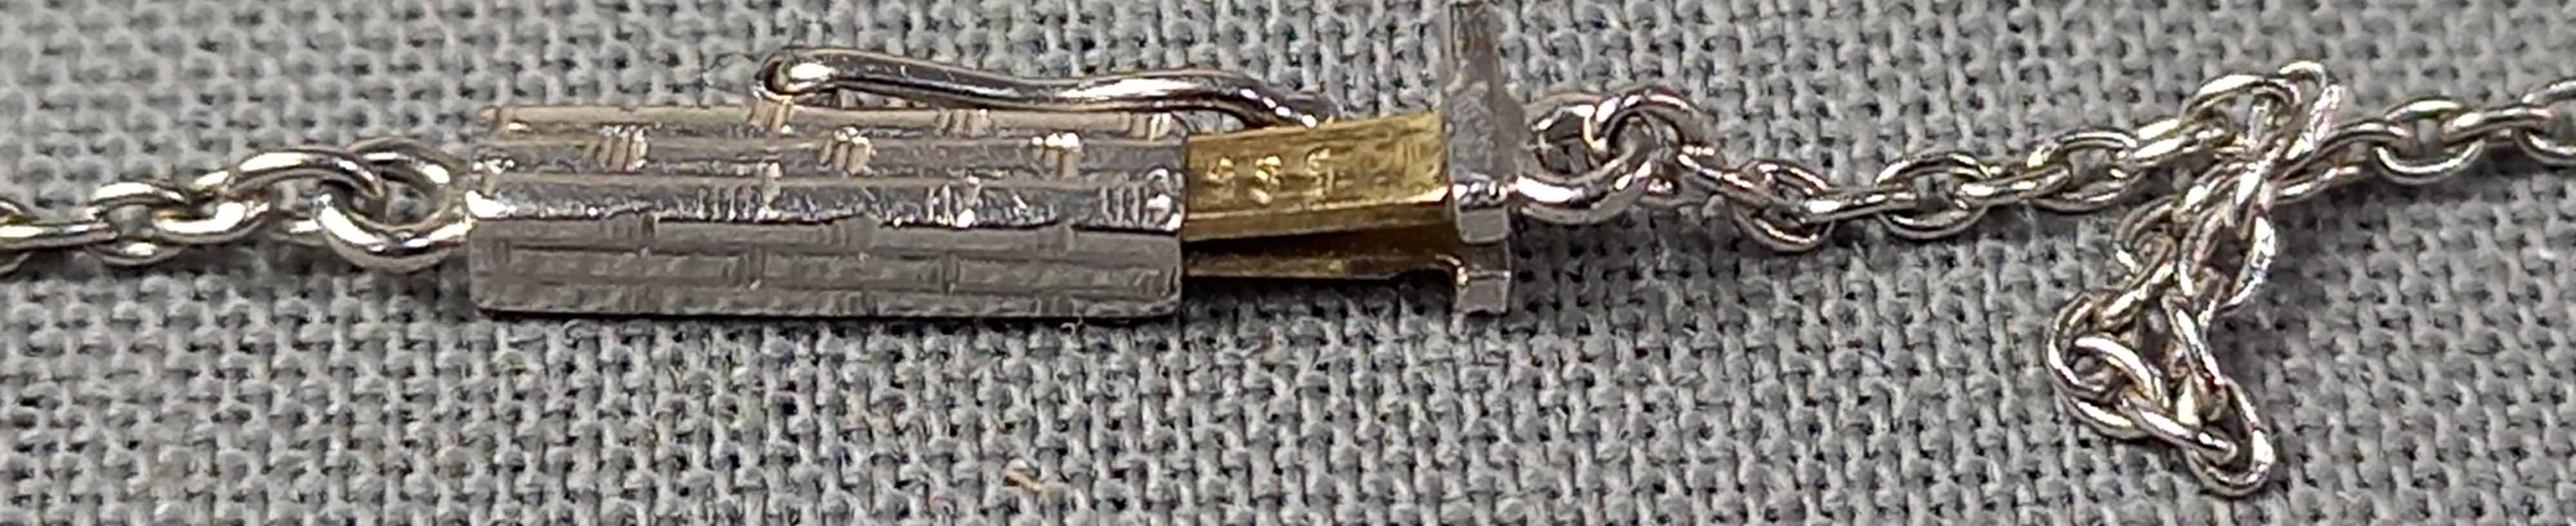 Collier Gold 585 mit Diamant circa 0,5 Karat und Diamant 0,22 Karat. - Image 10 of 13